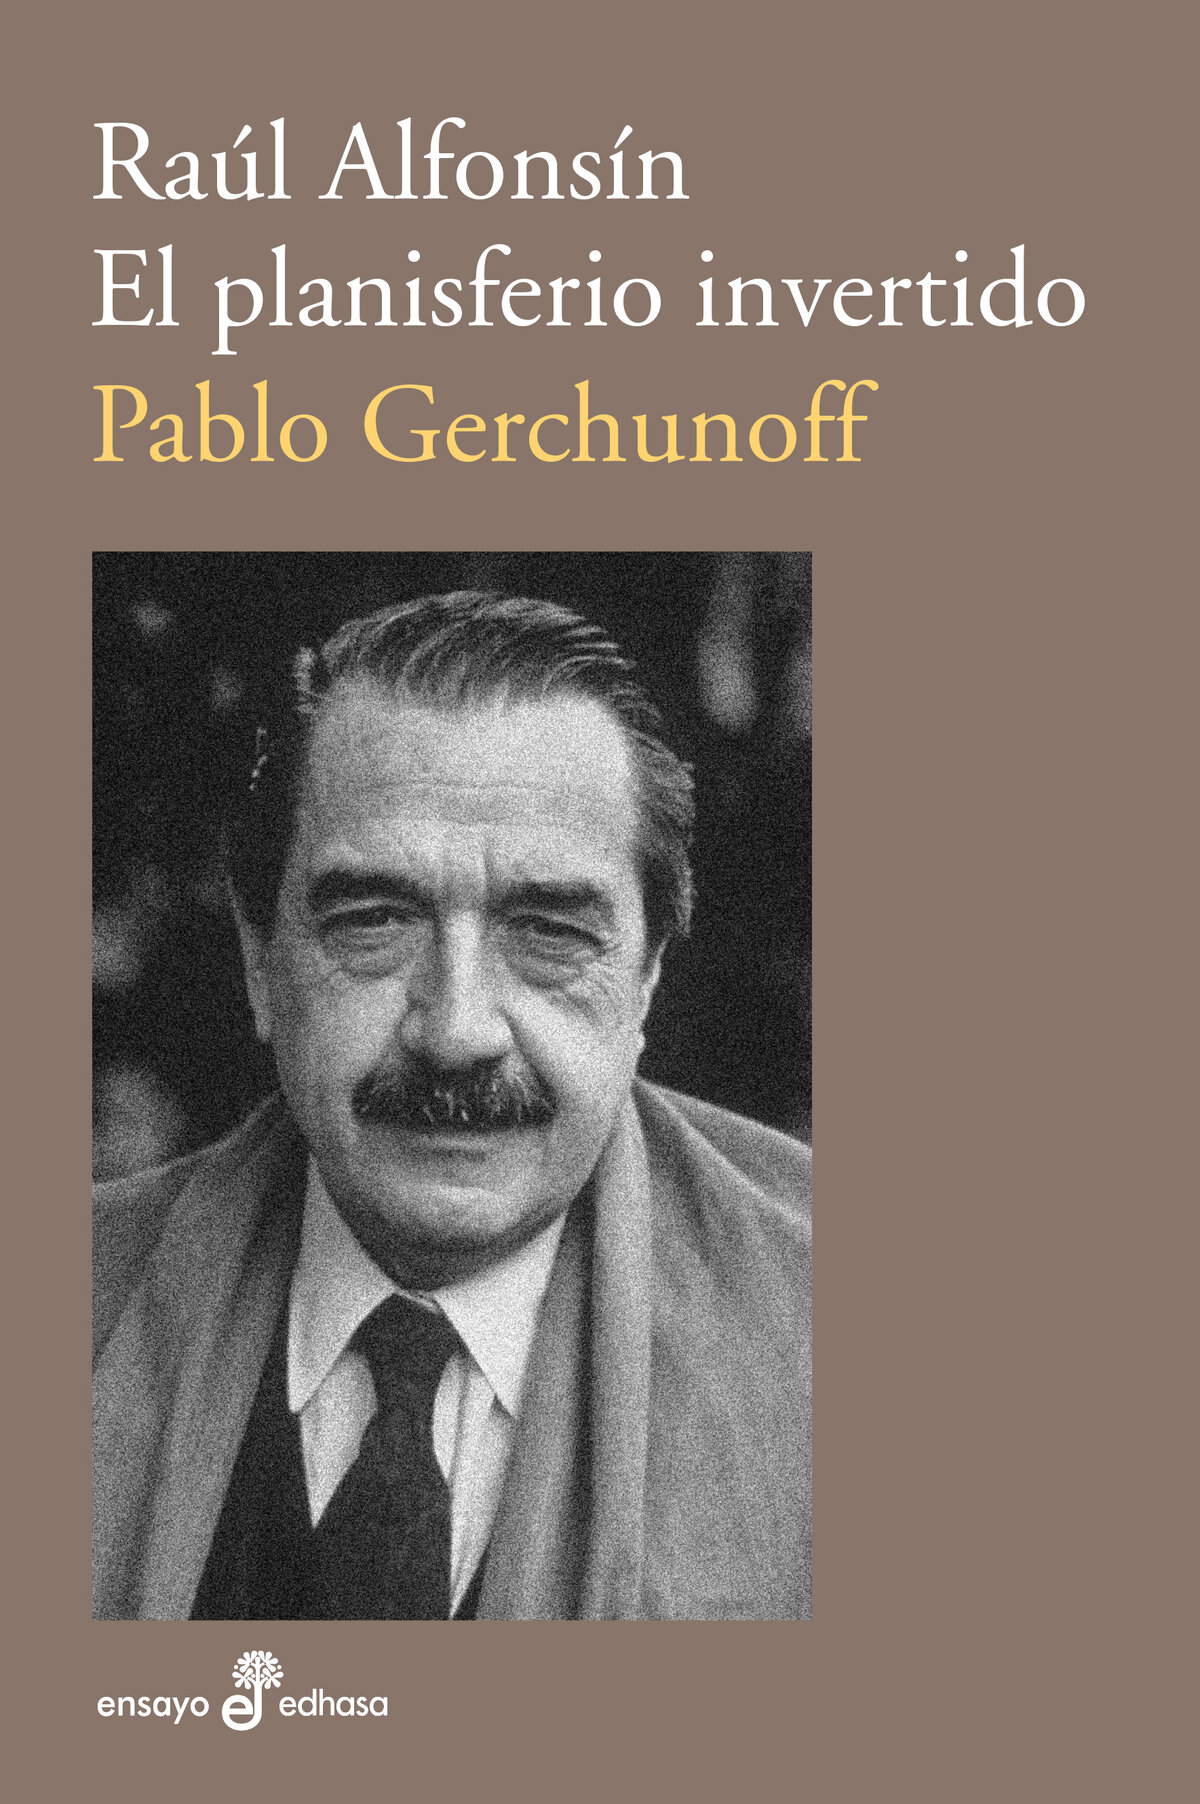 Pablo Gerchunoff RAÚL ALFONSÍN EL PLANISFERIO INVERTIDO Ensayo biográfico - photo 1